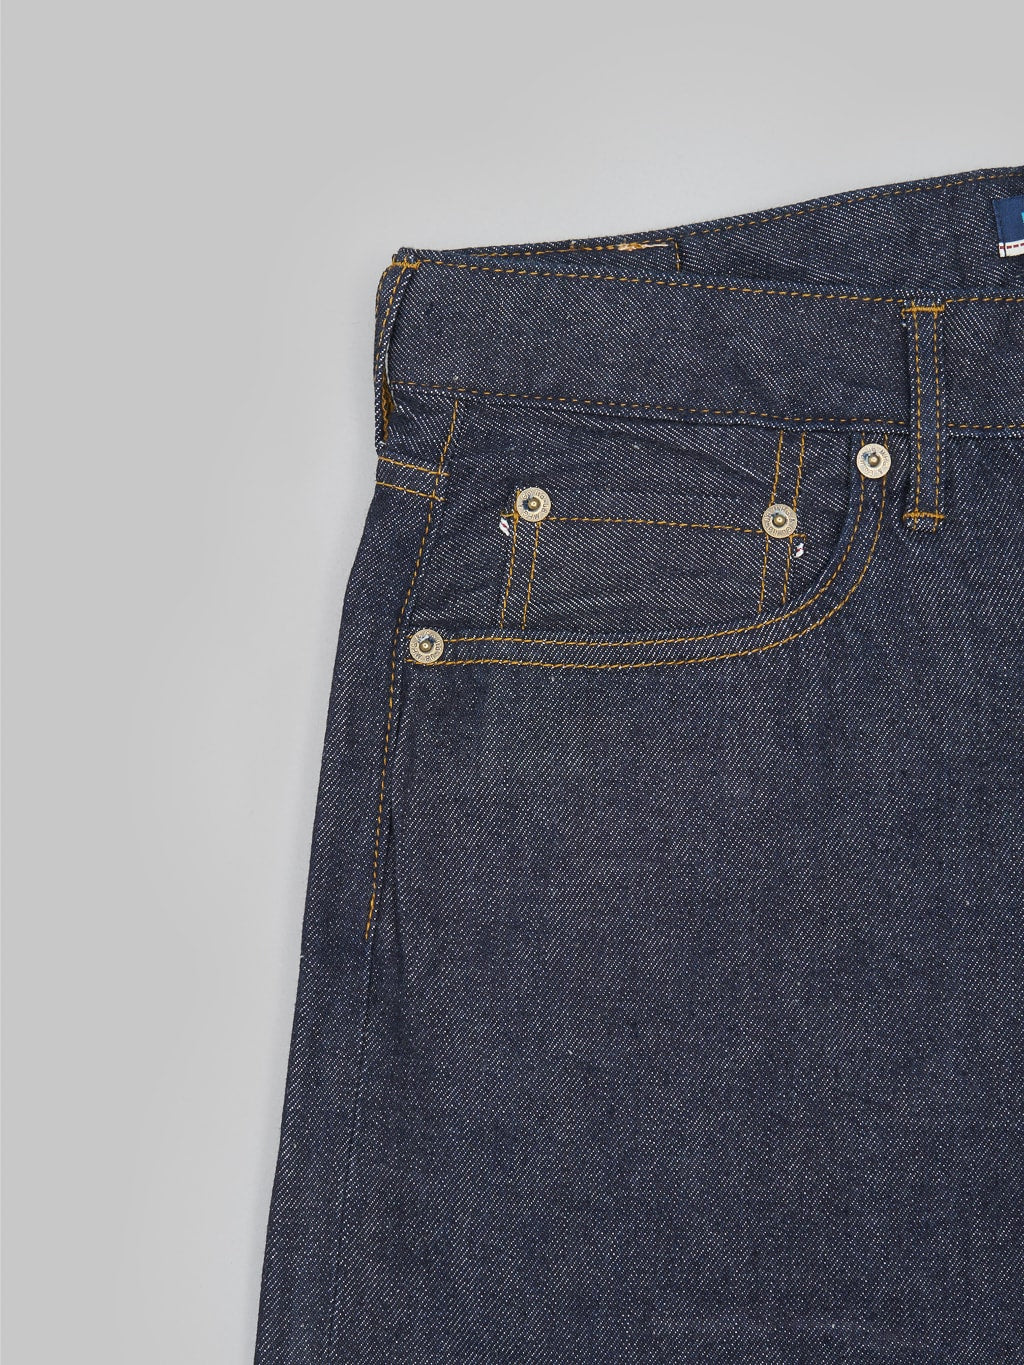 Japan Blue J508 lightweight selvedge denim loose Jeans coin pocket